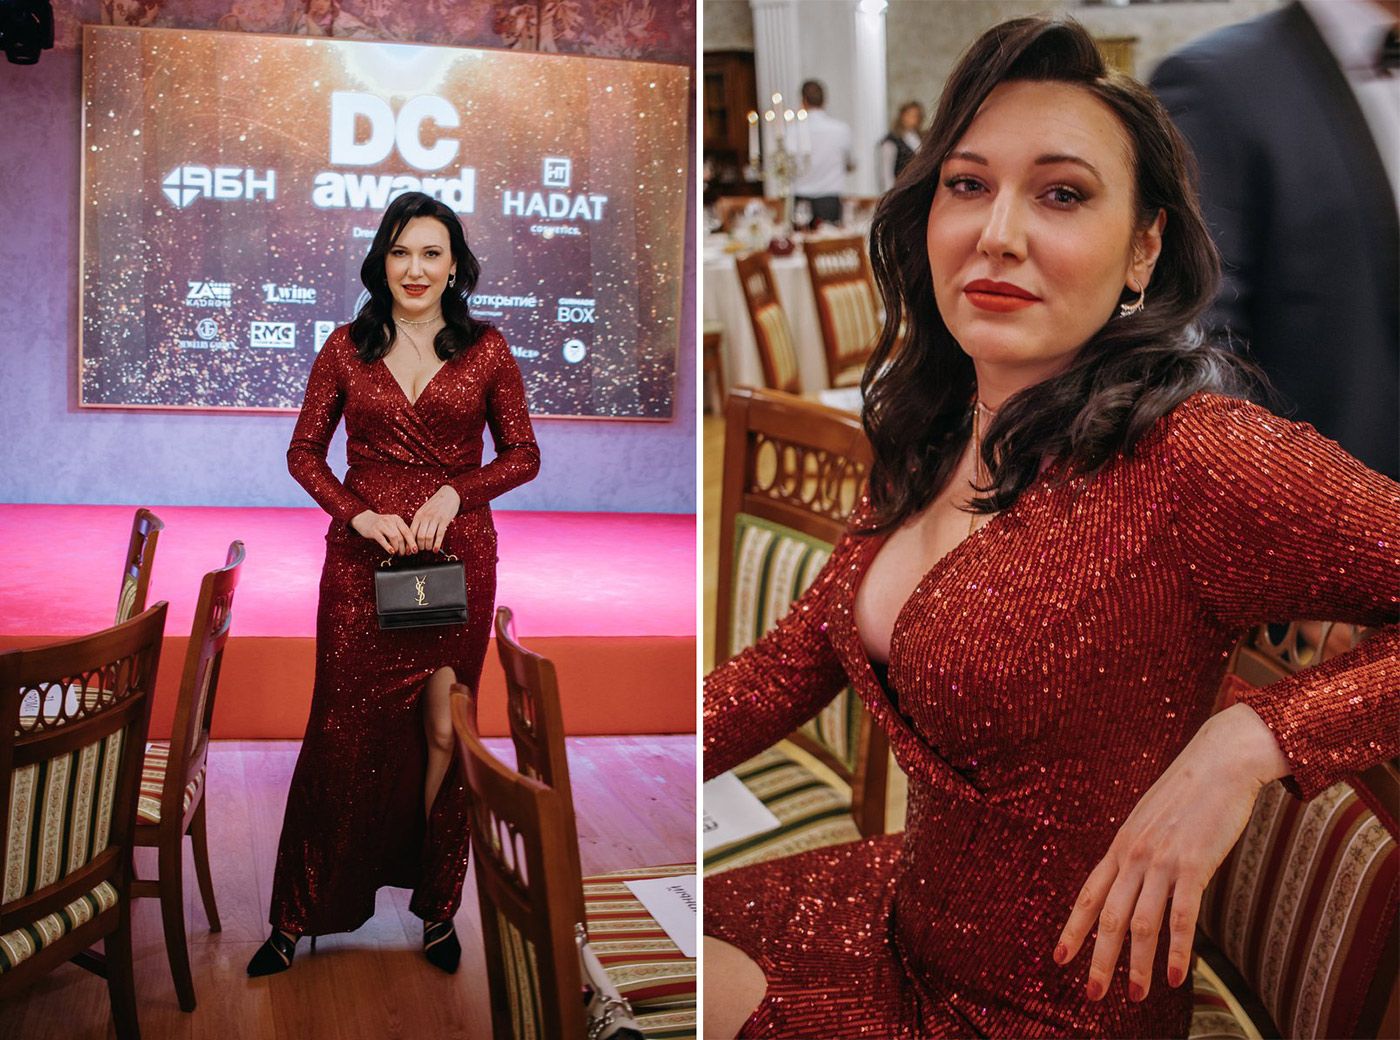 Катерина Перез на церемонии вручения наград журнала DC Magazine Awards в Санкт-Петербурге, Россия, декабрь 2021 г.